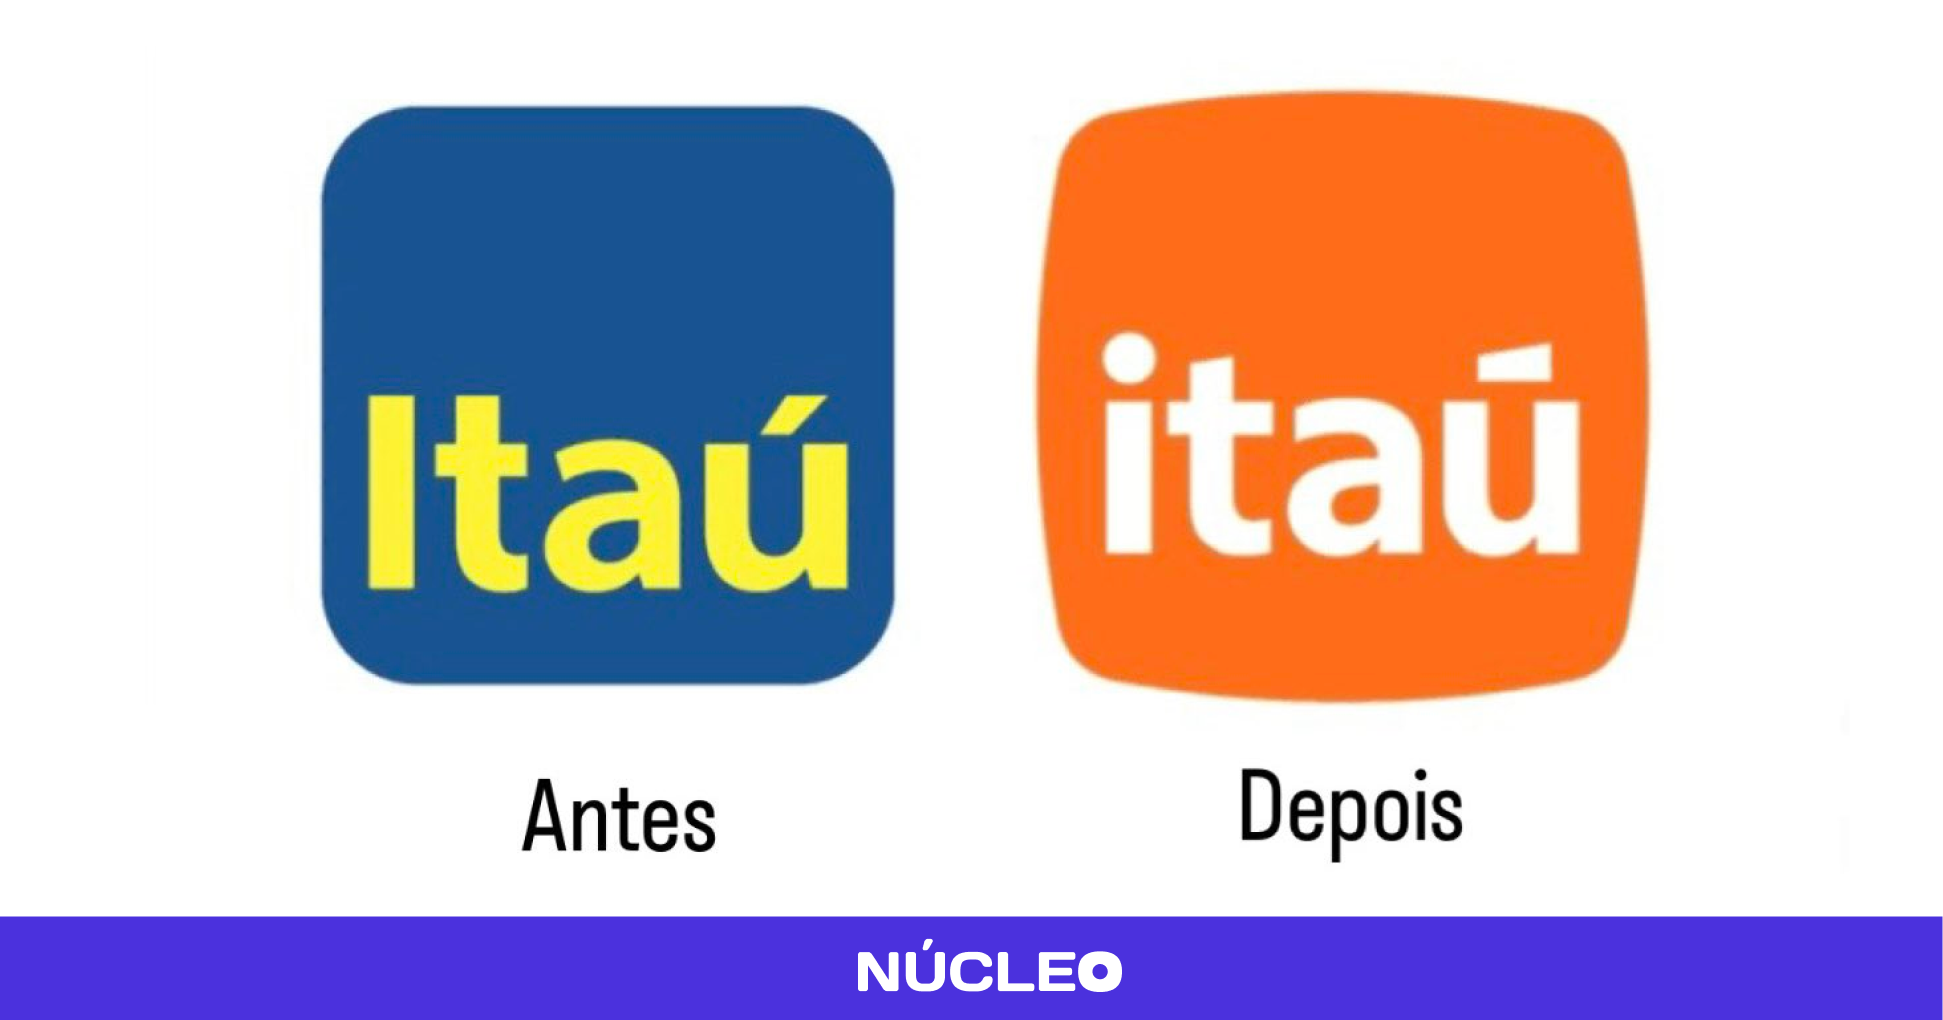 Nova marca do Itaú gera controvérsia nas redes